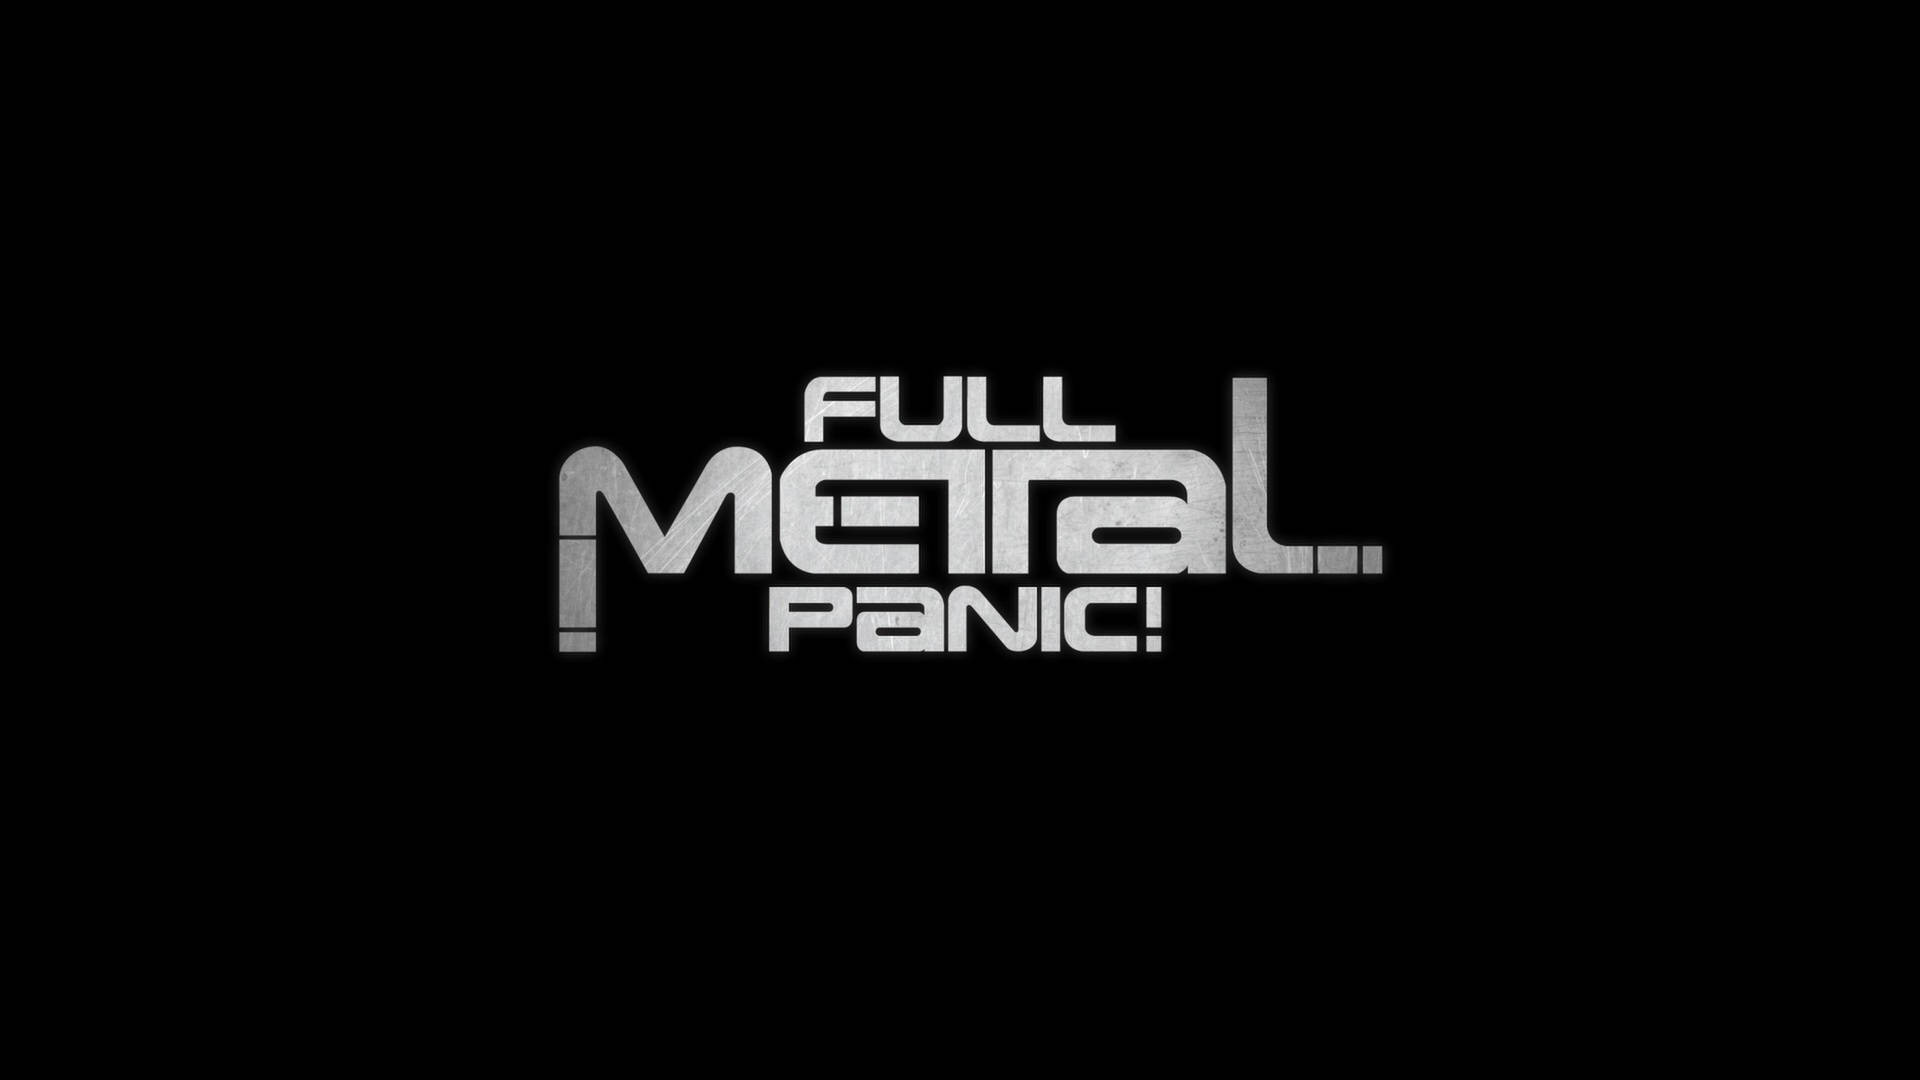 Metallic Full Metal Panic Poster Wallpaper